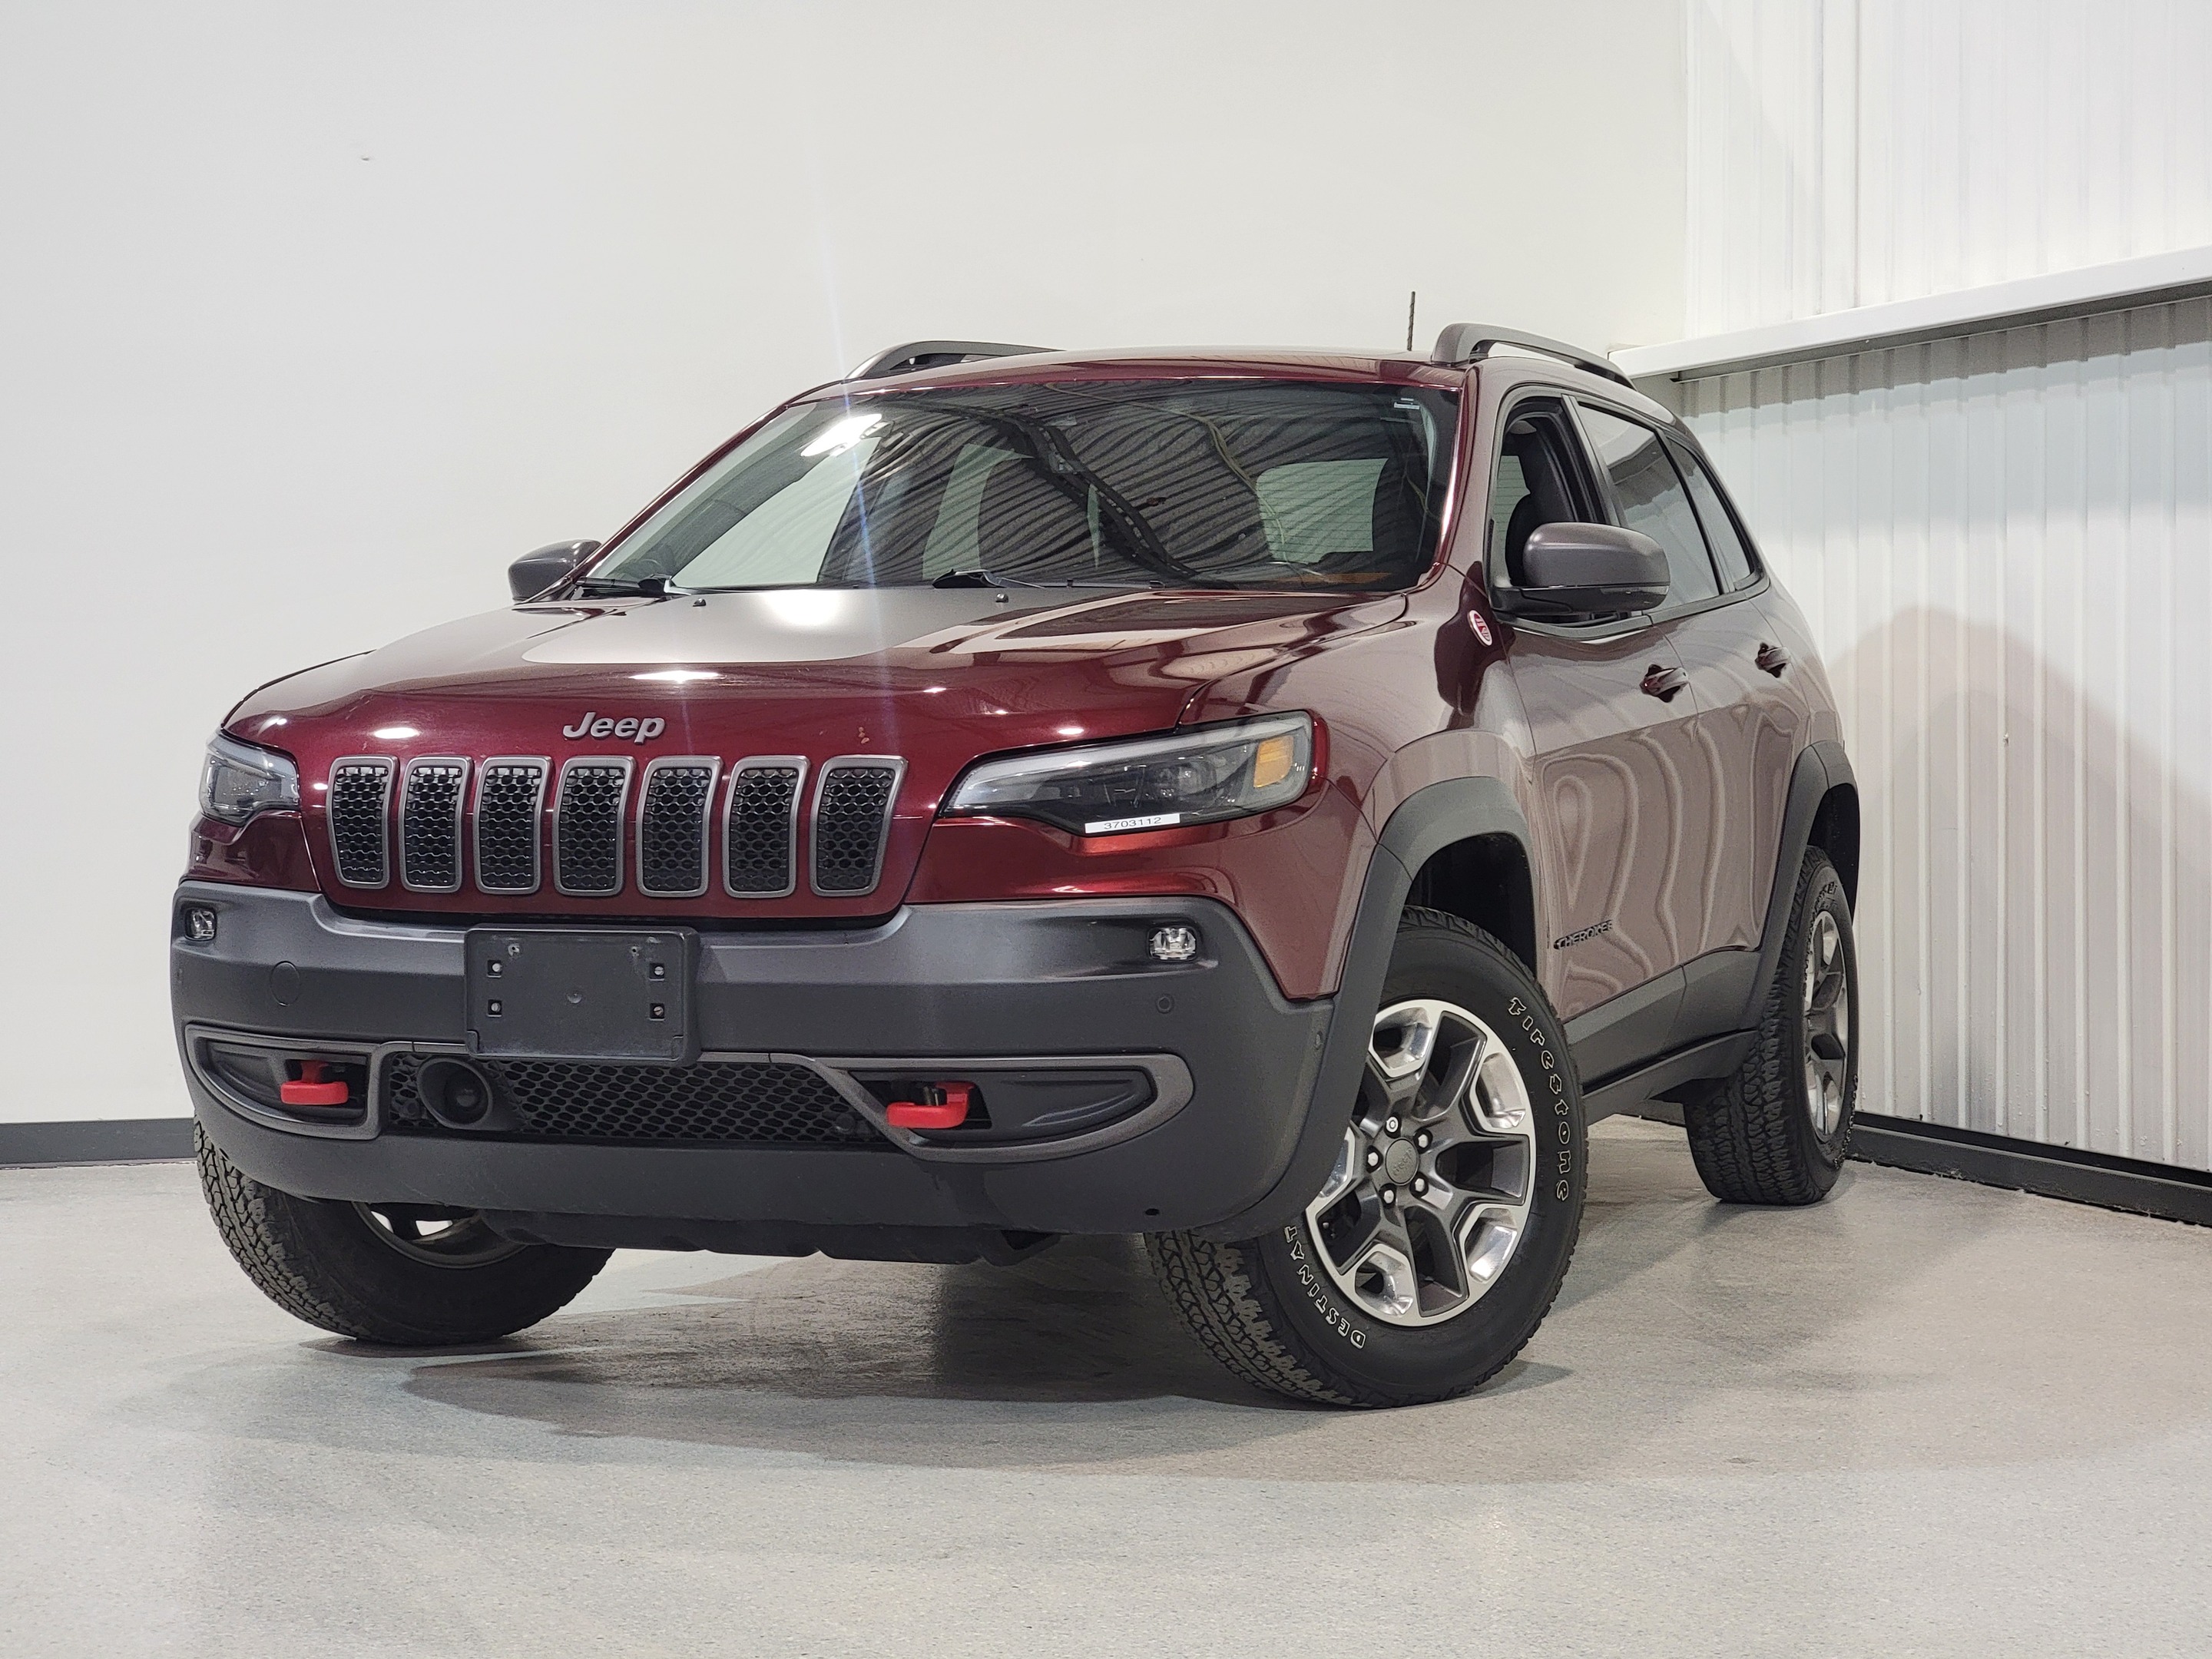 2019 Jeep Cherokee Intérieur cuir, Sièges ventilés, Trail Hawk ,4x4